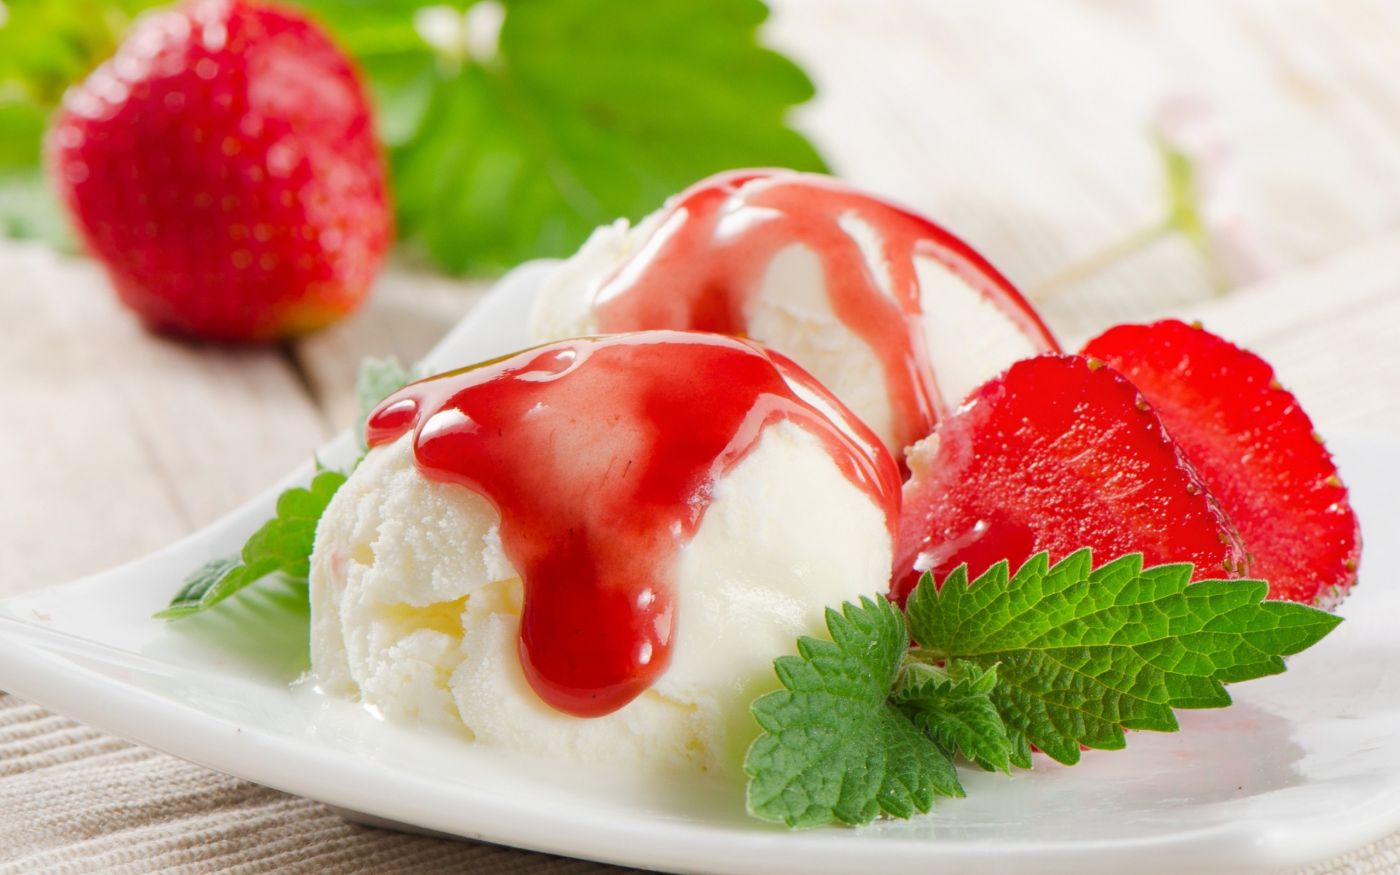 自制健康的草莓冰淇淋 - 日本男子的家庭料理 | tasty-note | 每天都有新食譜！